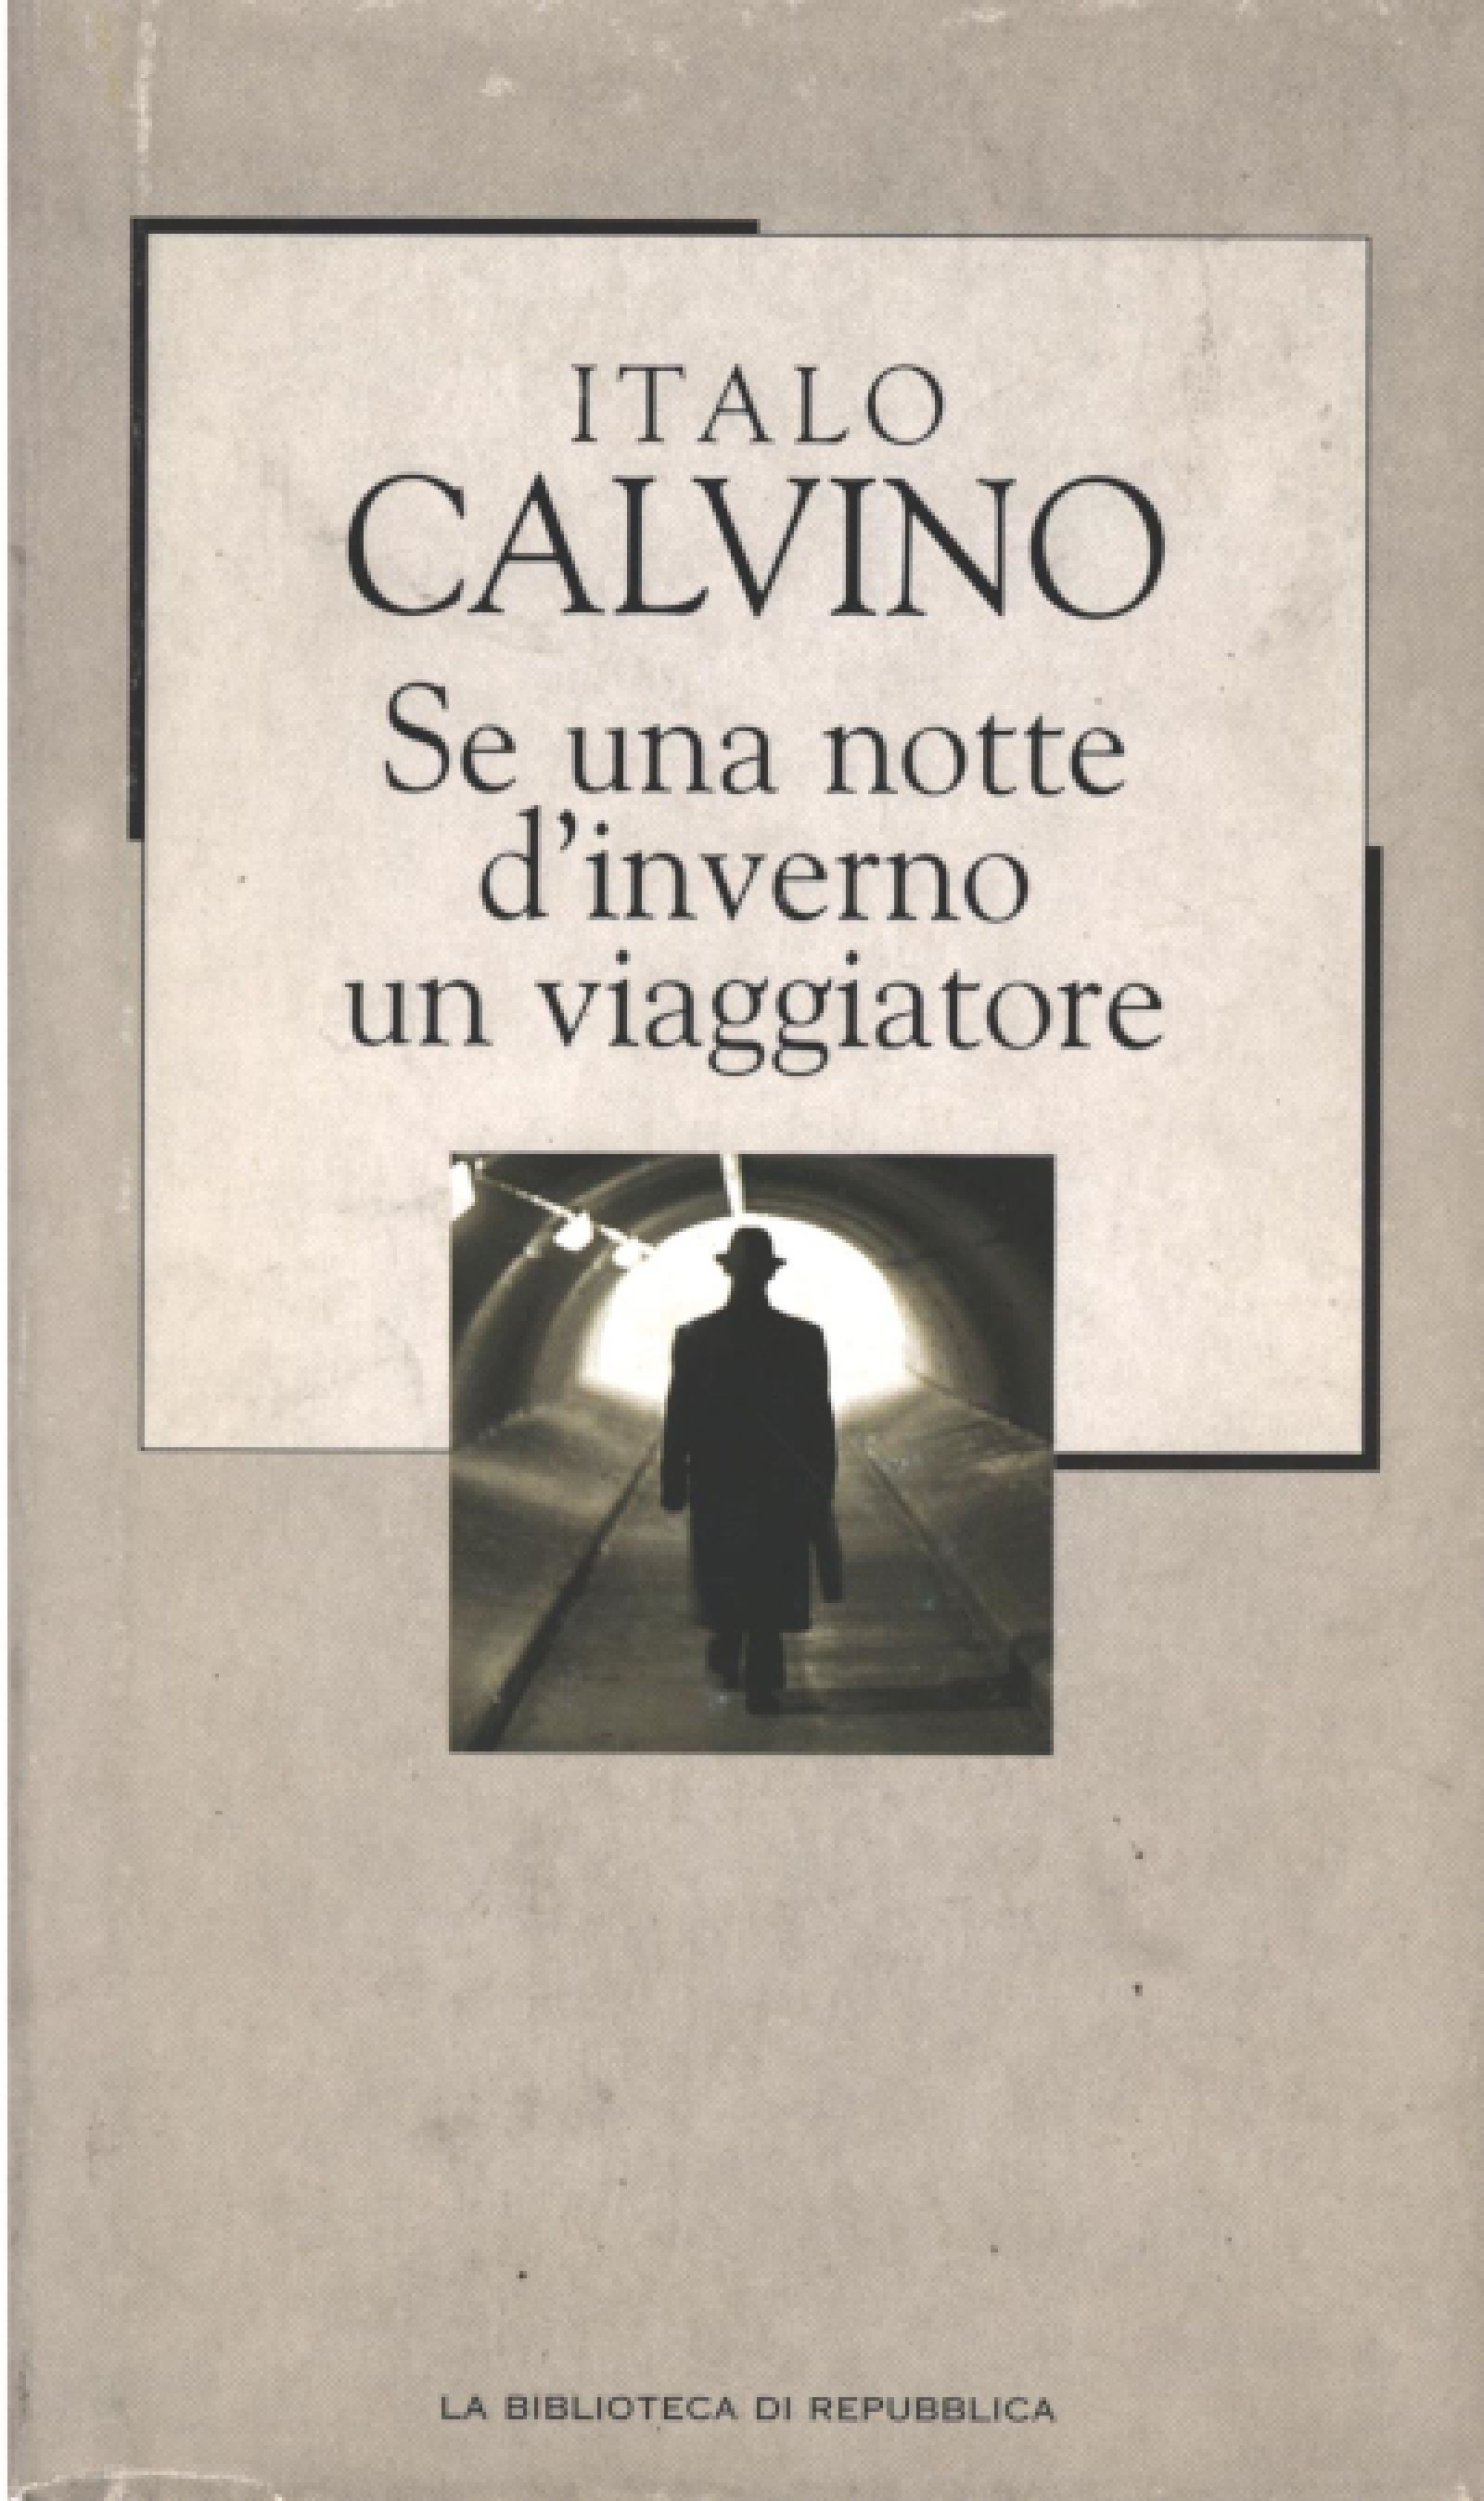 Italo Calvino: Se una notte d'inverno un viaggiatore (Italian language, 2016)